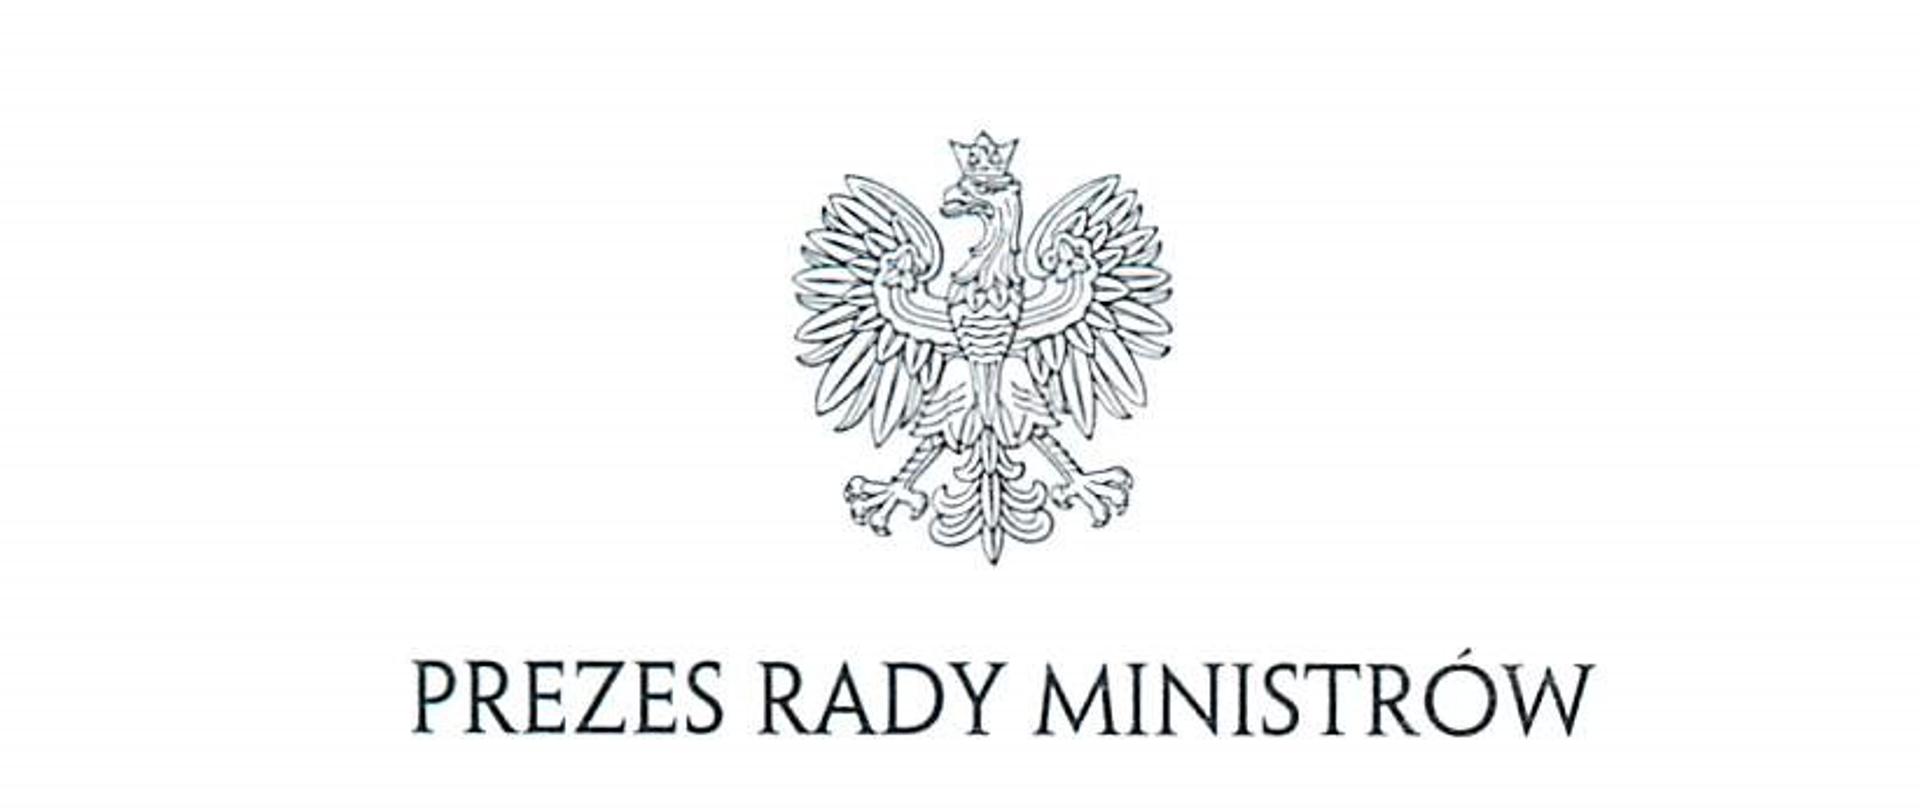 Na środku znajduje się czarny rysunek orła z koroną na białym tle a pod nim napis Prezes Rady Ministrów